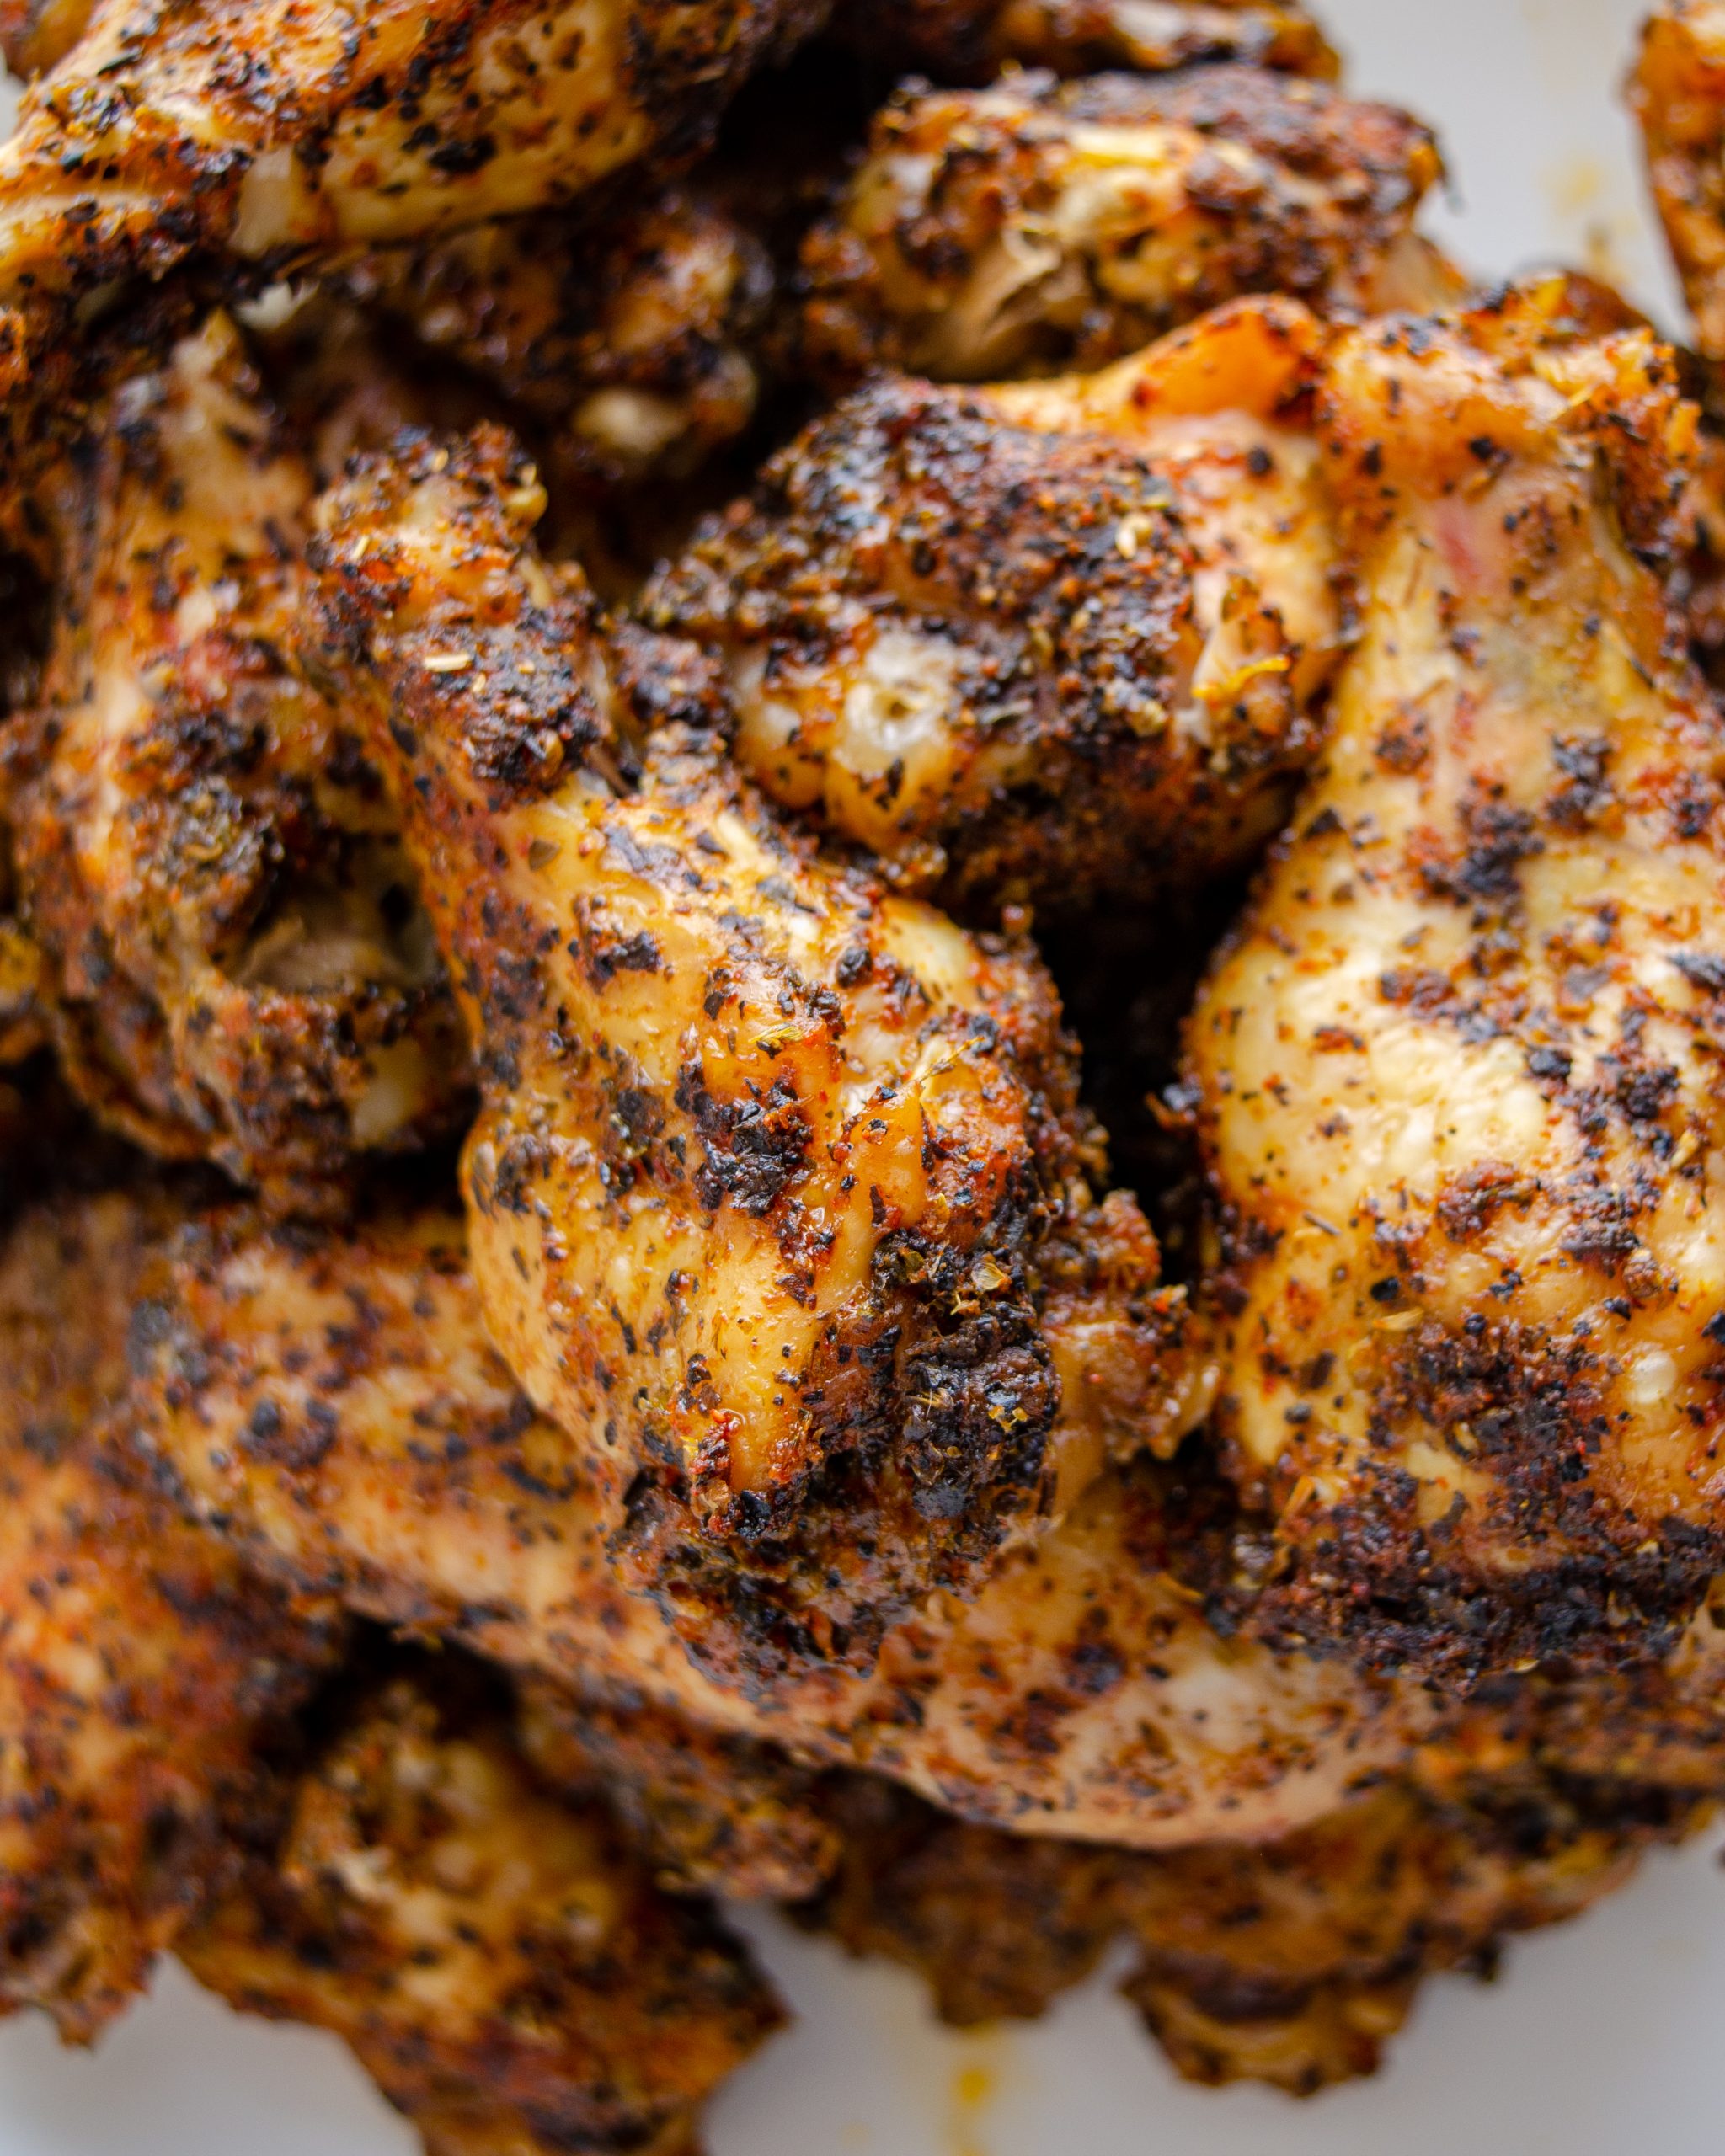 baked turkey wings, turkey wings recipes, turkey wings in oven